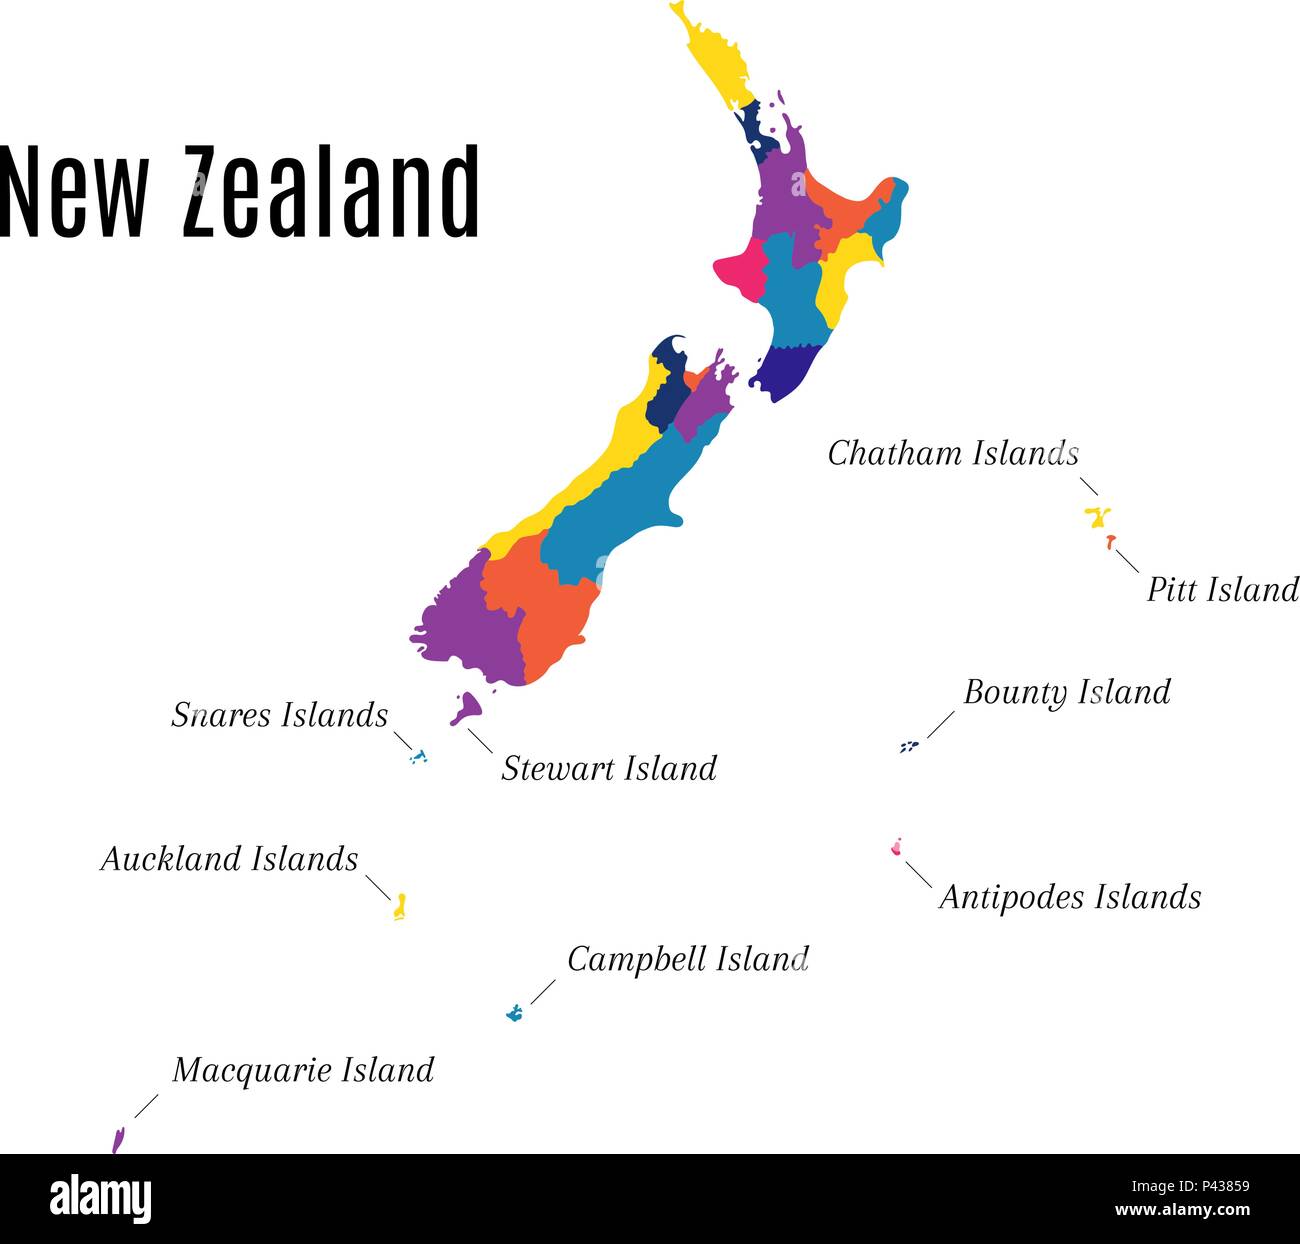 Geografische Karte auf dem Neuseeland und die Inseln. Zustand auch als Aotearoa in der Sprache der Maori bekannt Stock Vektor